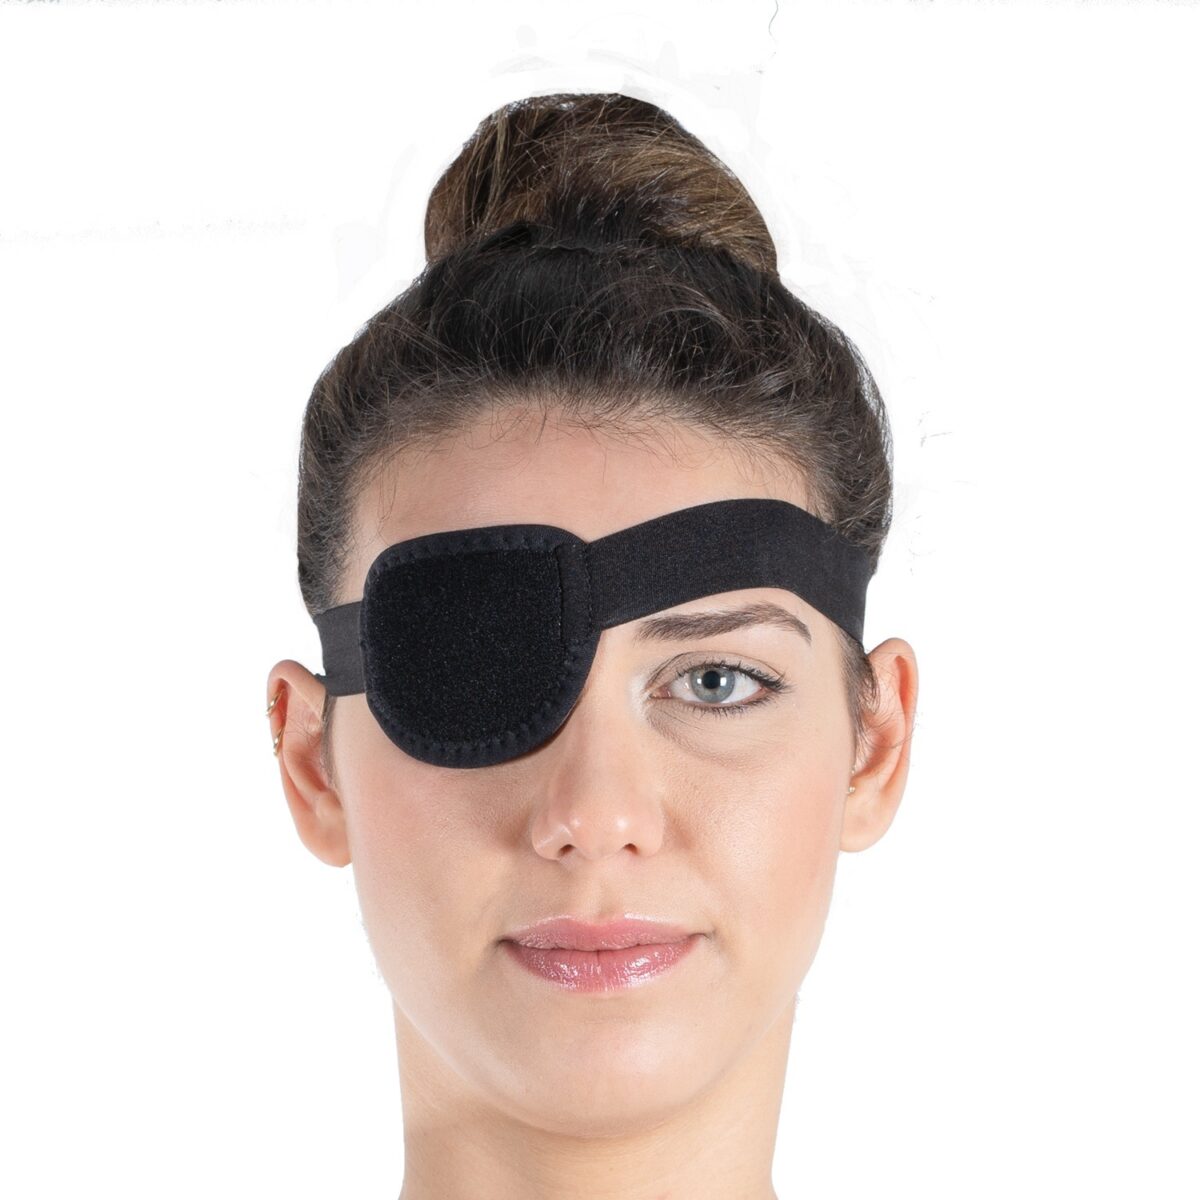 wingmed orthopedic equipments W1008 pirate eye bandage 41